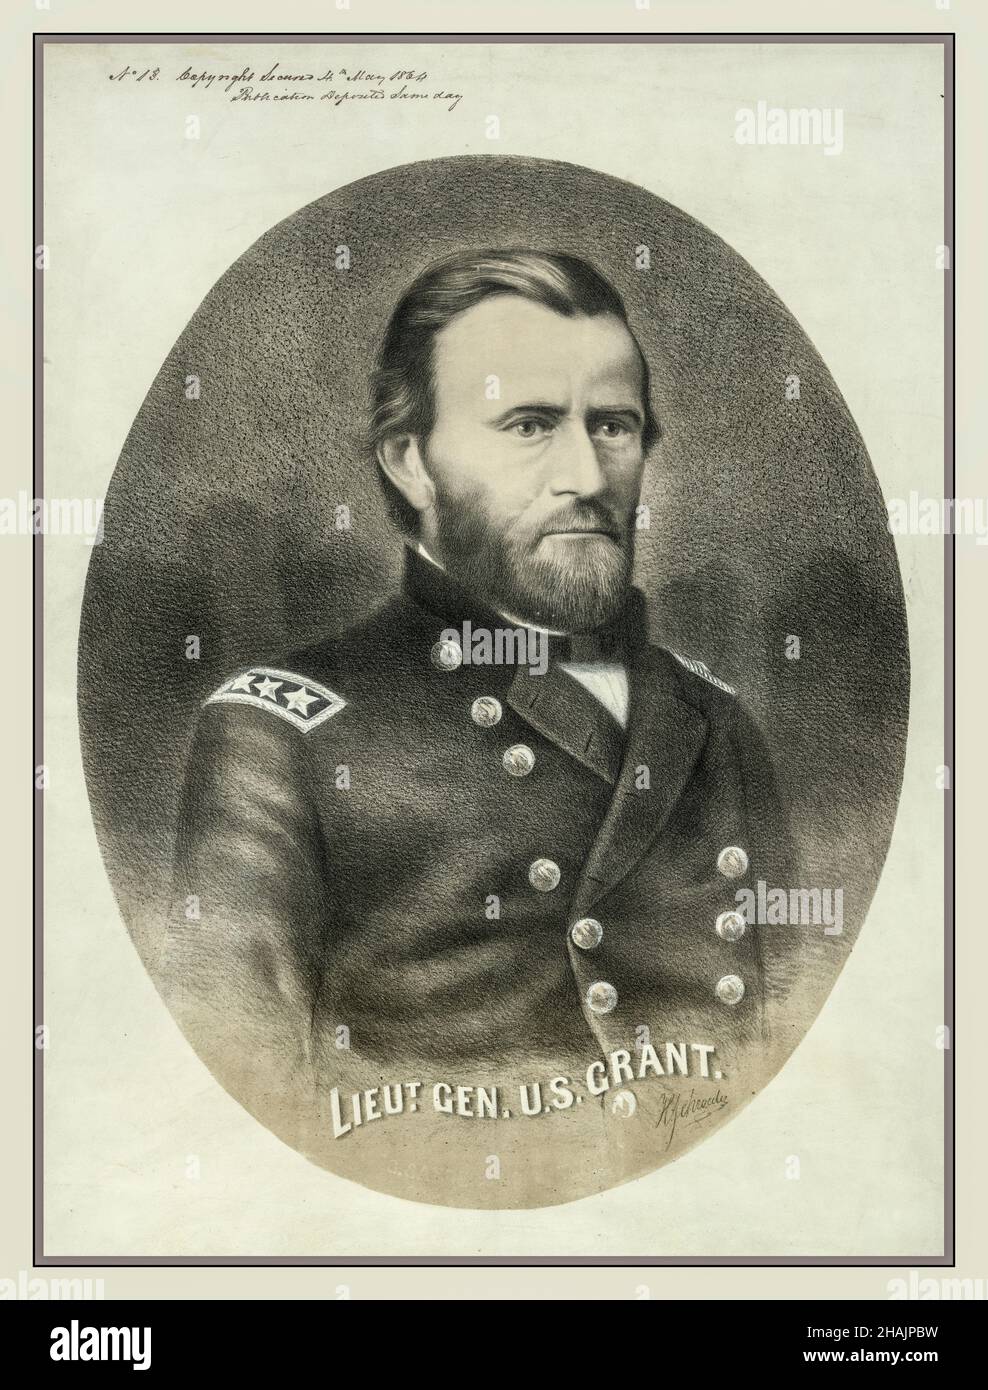 GENERAL GRANT Vintage 1864 Portrait Illustration von Lieut. Gen. U.S.Grant / H. Schroeder. Kopf-Schultern-Porträt, nach links zeigend. c1864. - Grant, Ulysses S.--(Ulysses Simpson),--1822-1885--Militärdienst Stockfoto